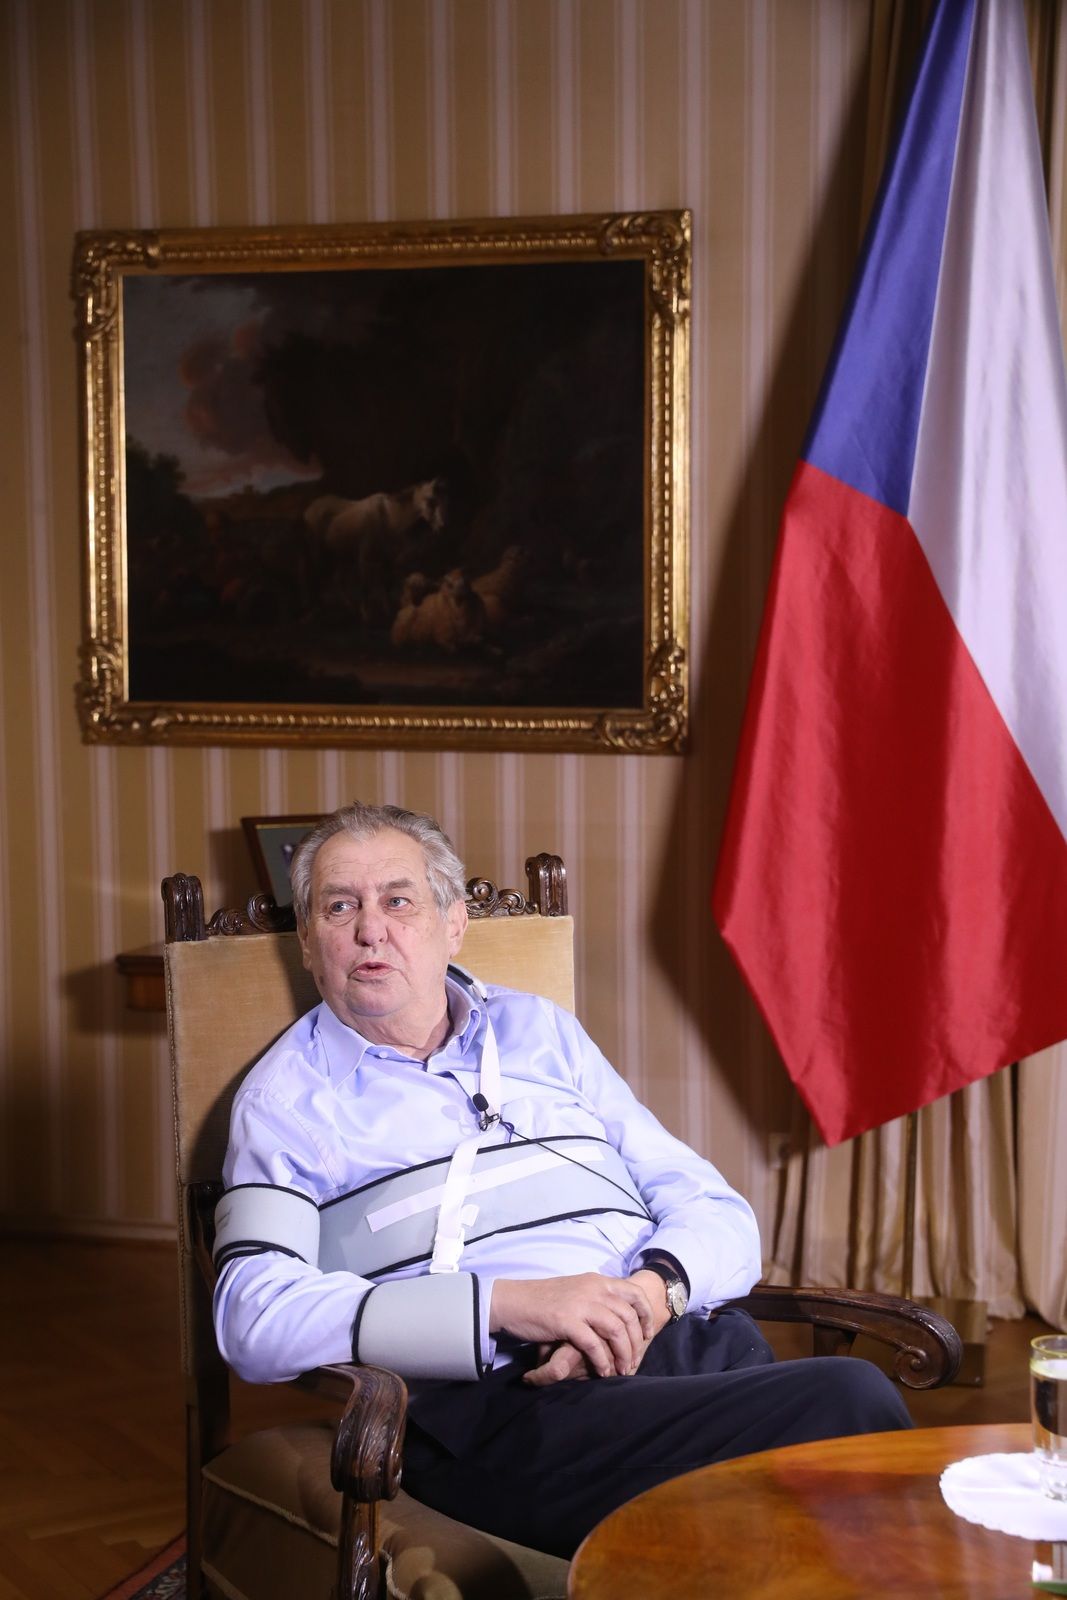 Miloš Zeman v pořadu S prezidentem v Lánech. (11.10.2020)